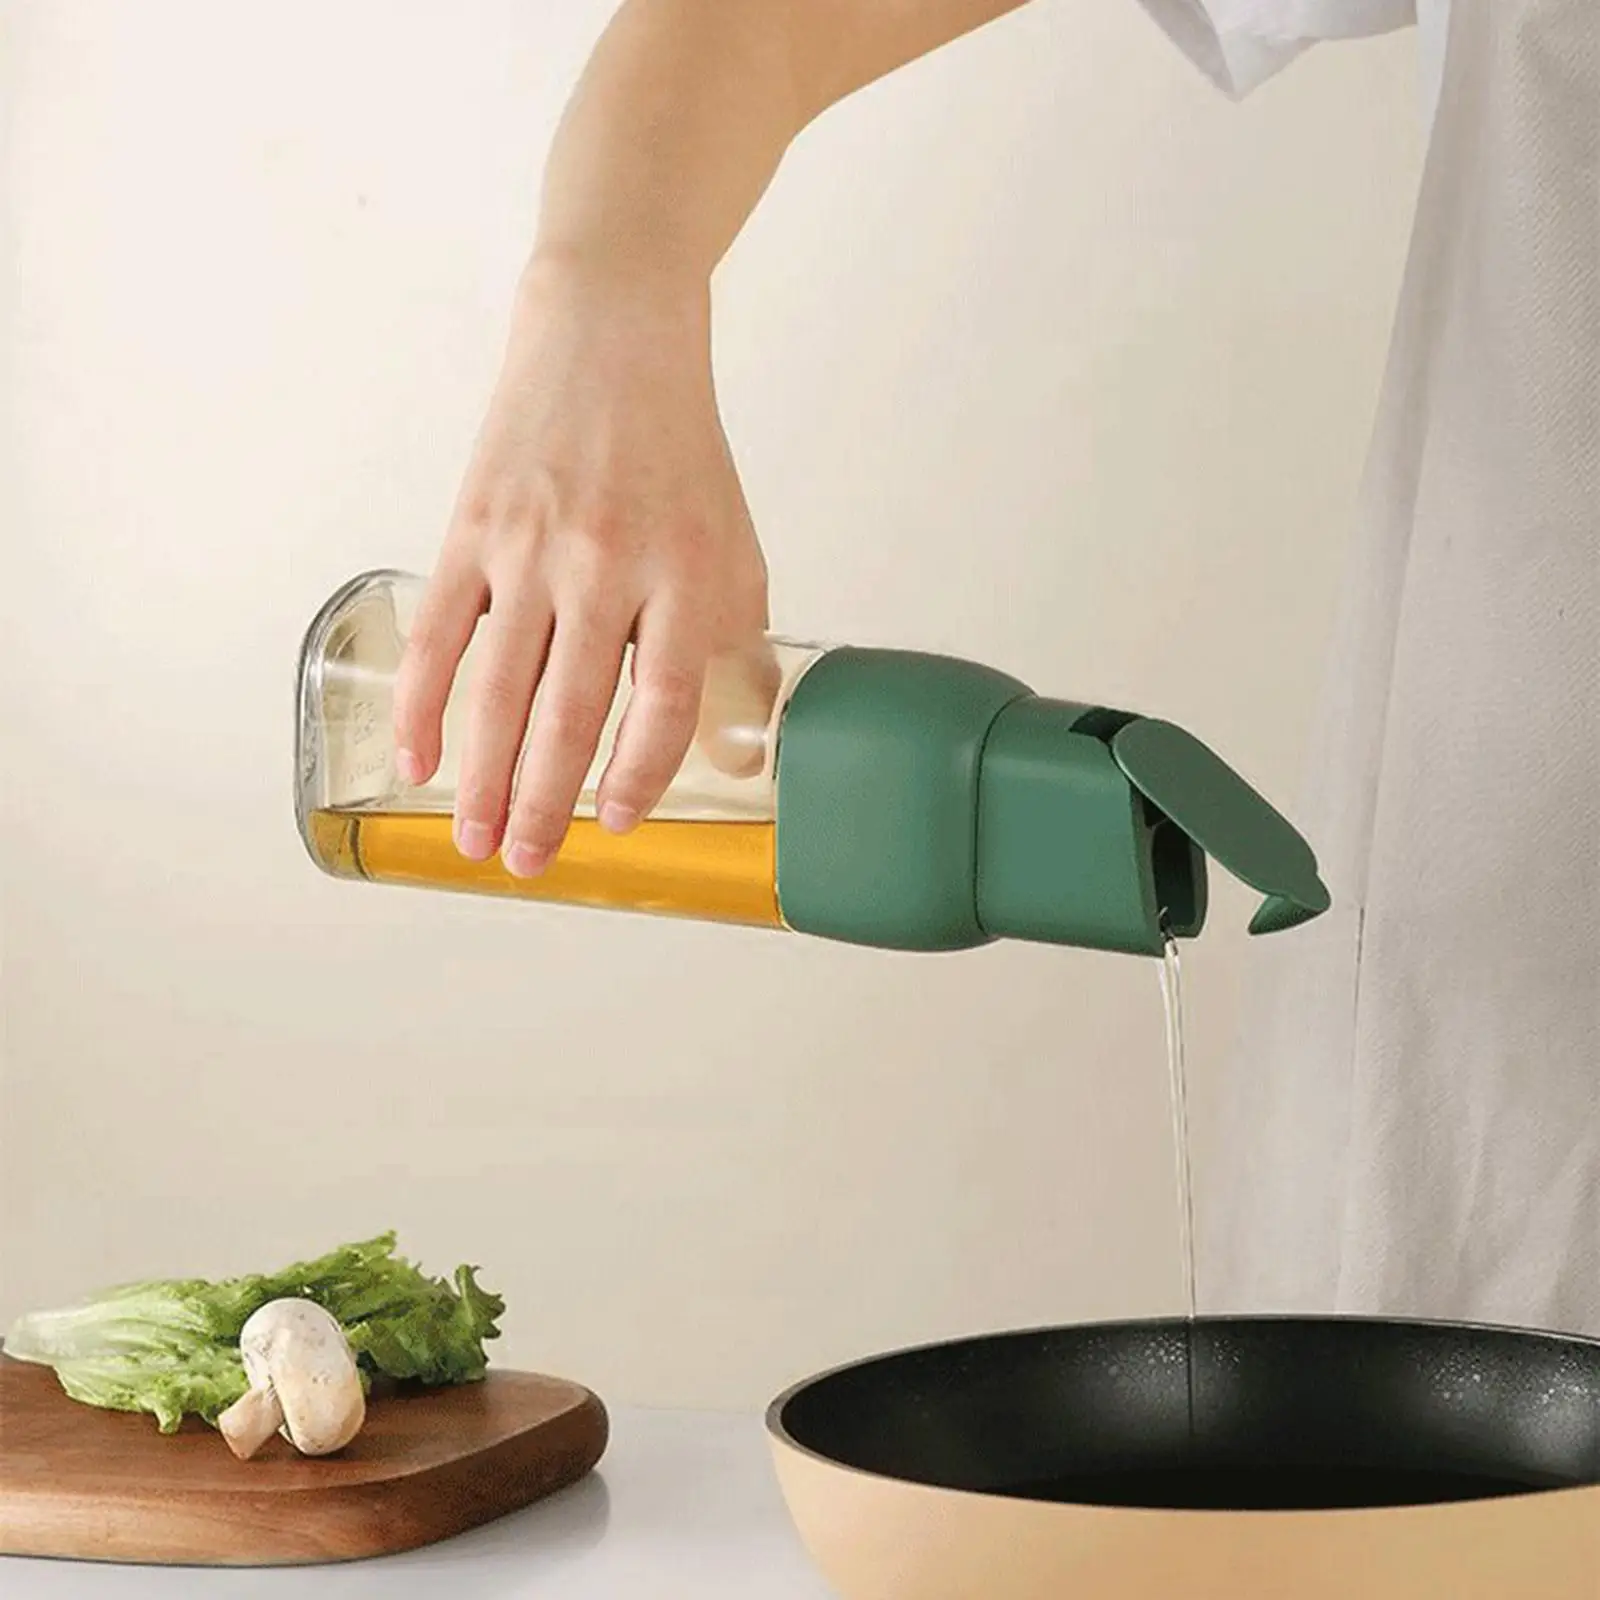 Clear Olive Oil Dispenser Bottle Cooking Oil Dispenser Soy Sauce Bottle for Kitchen Cooking Baking Grilling